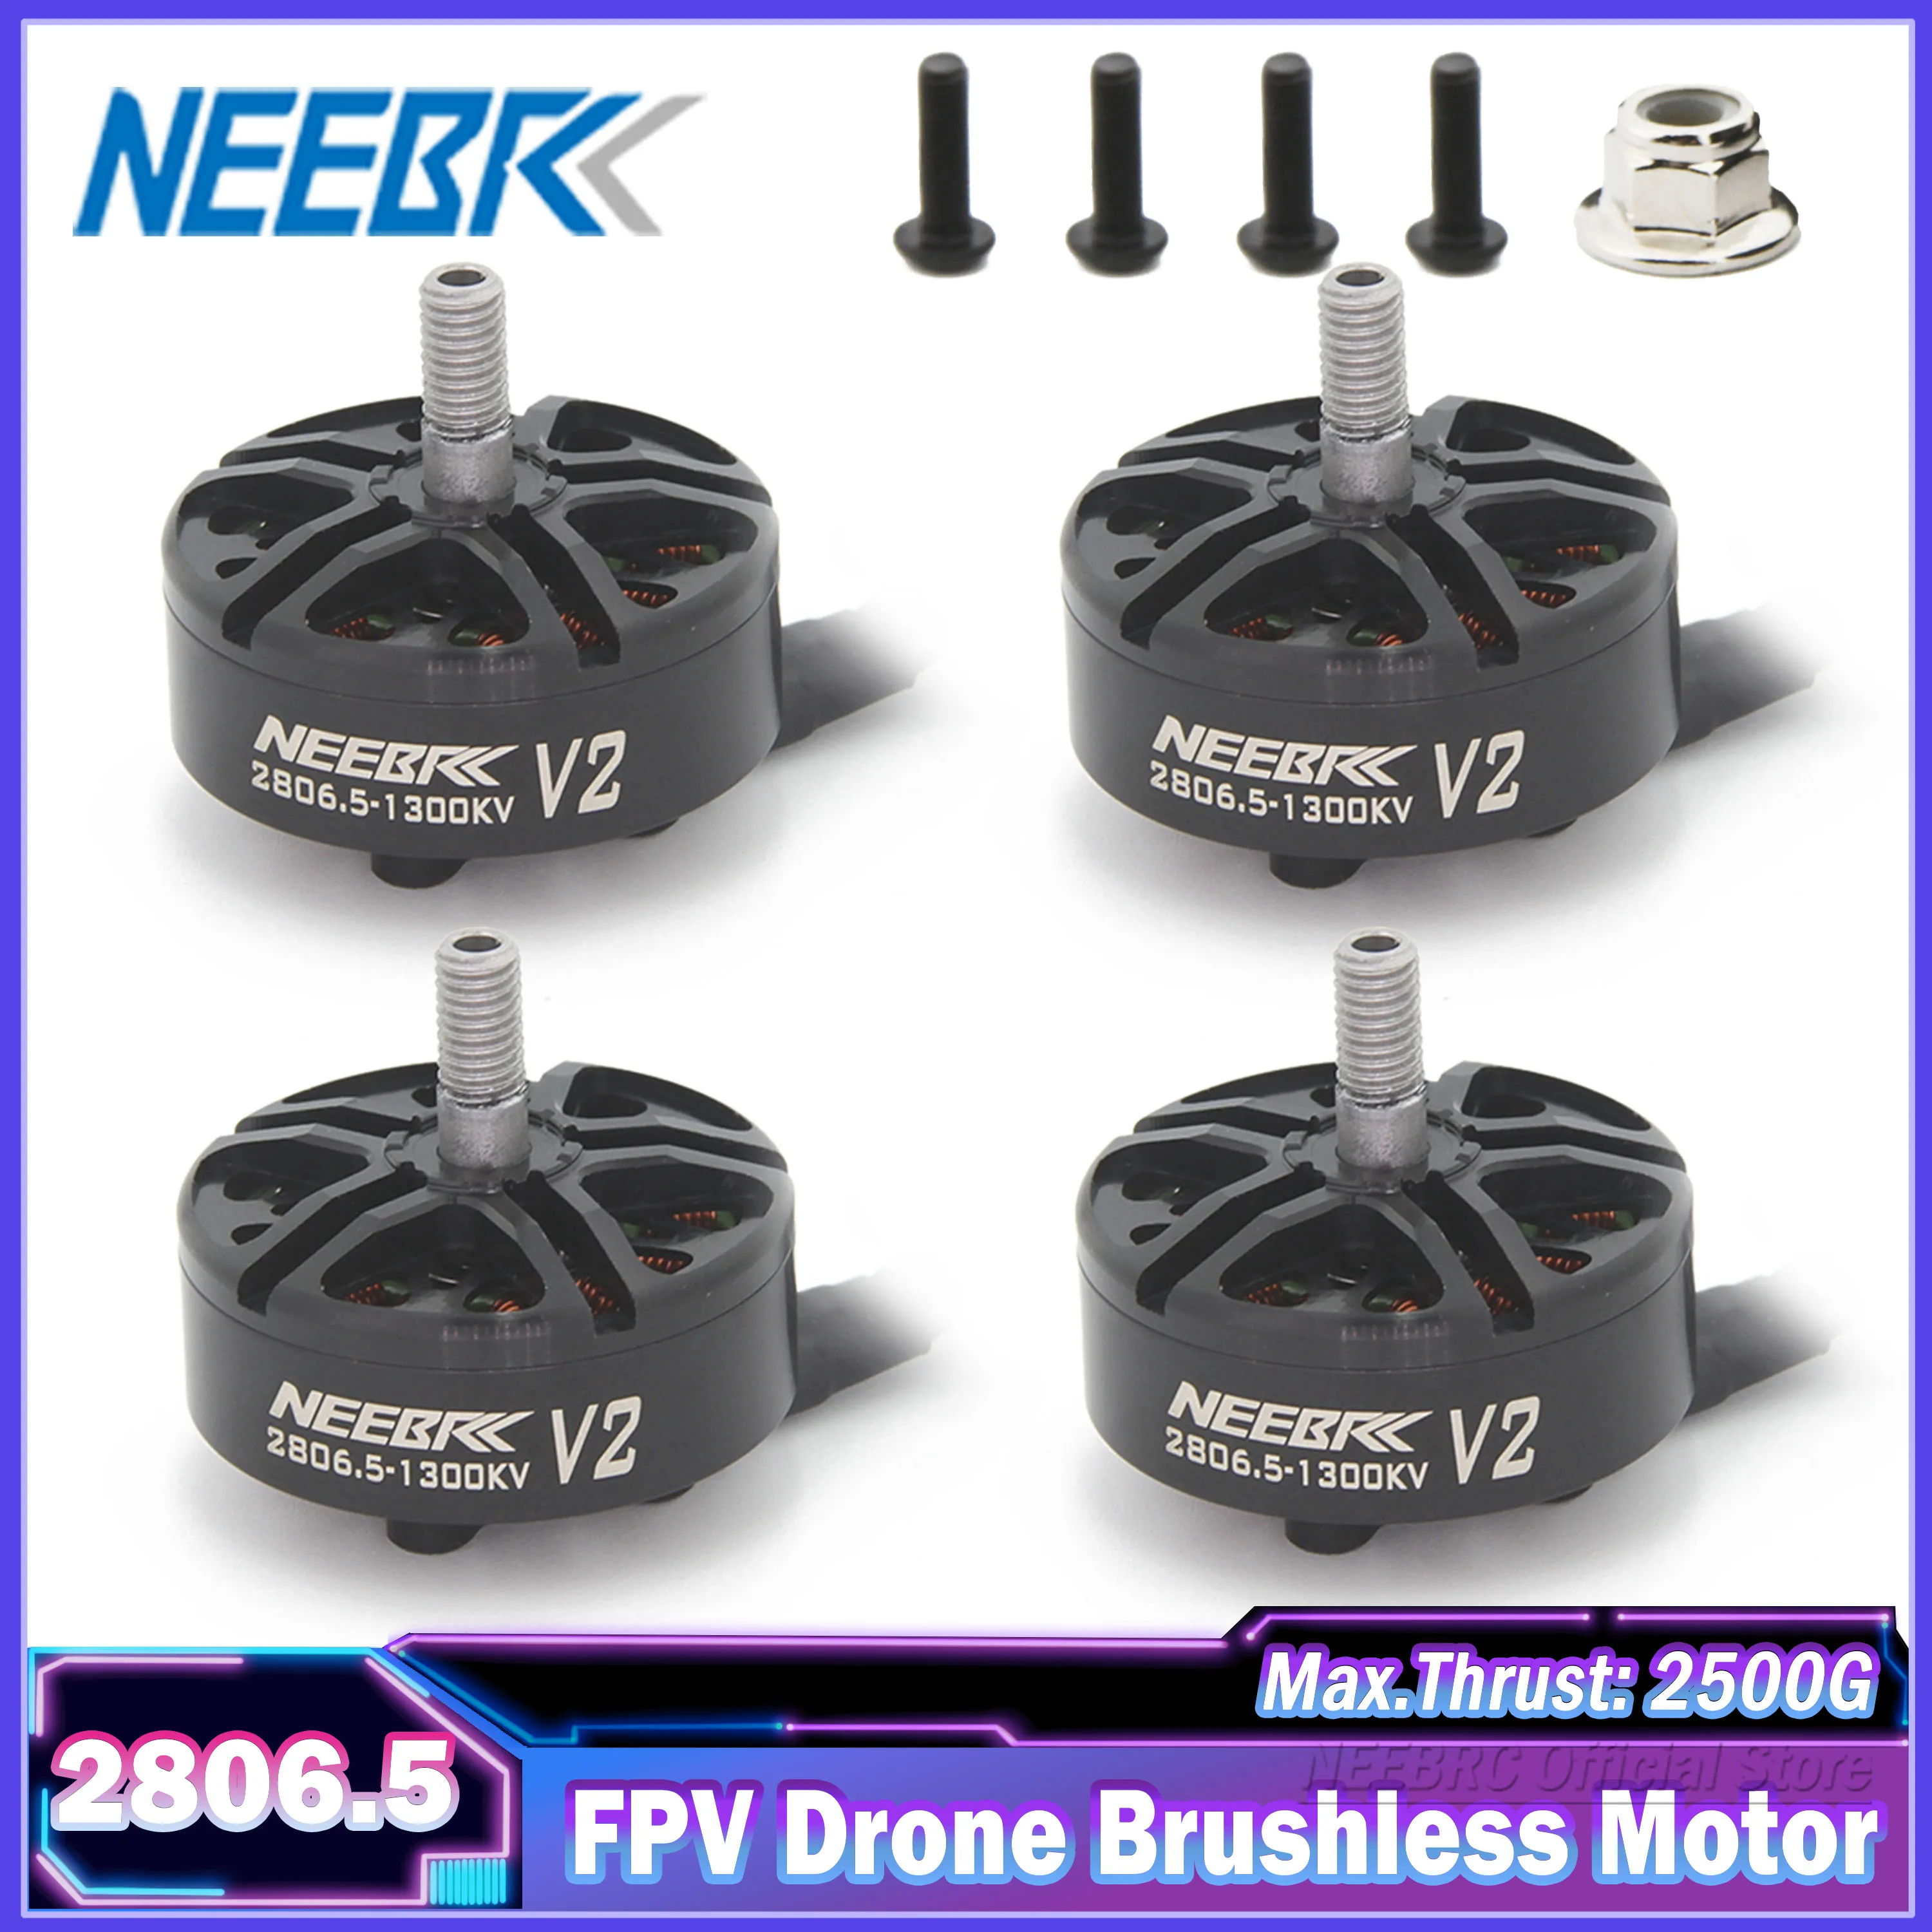 

NEEBRC 2806.5 2807 V2 Drone Brushless Motor Outrunner 1300KV 3-6S for RC FPV Racing Quadcopter Plane Mark4 7inch Frame ESC Model